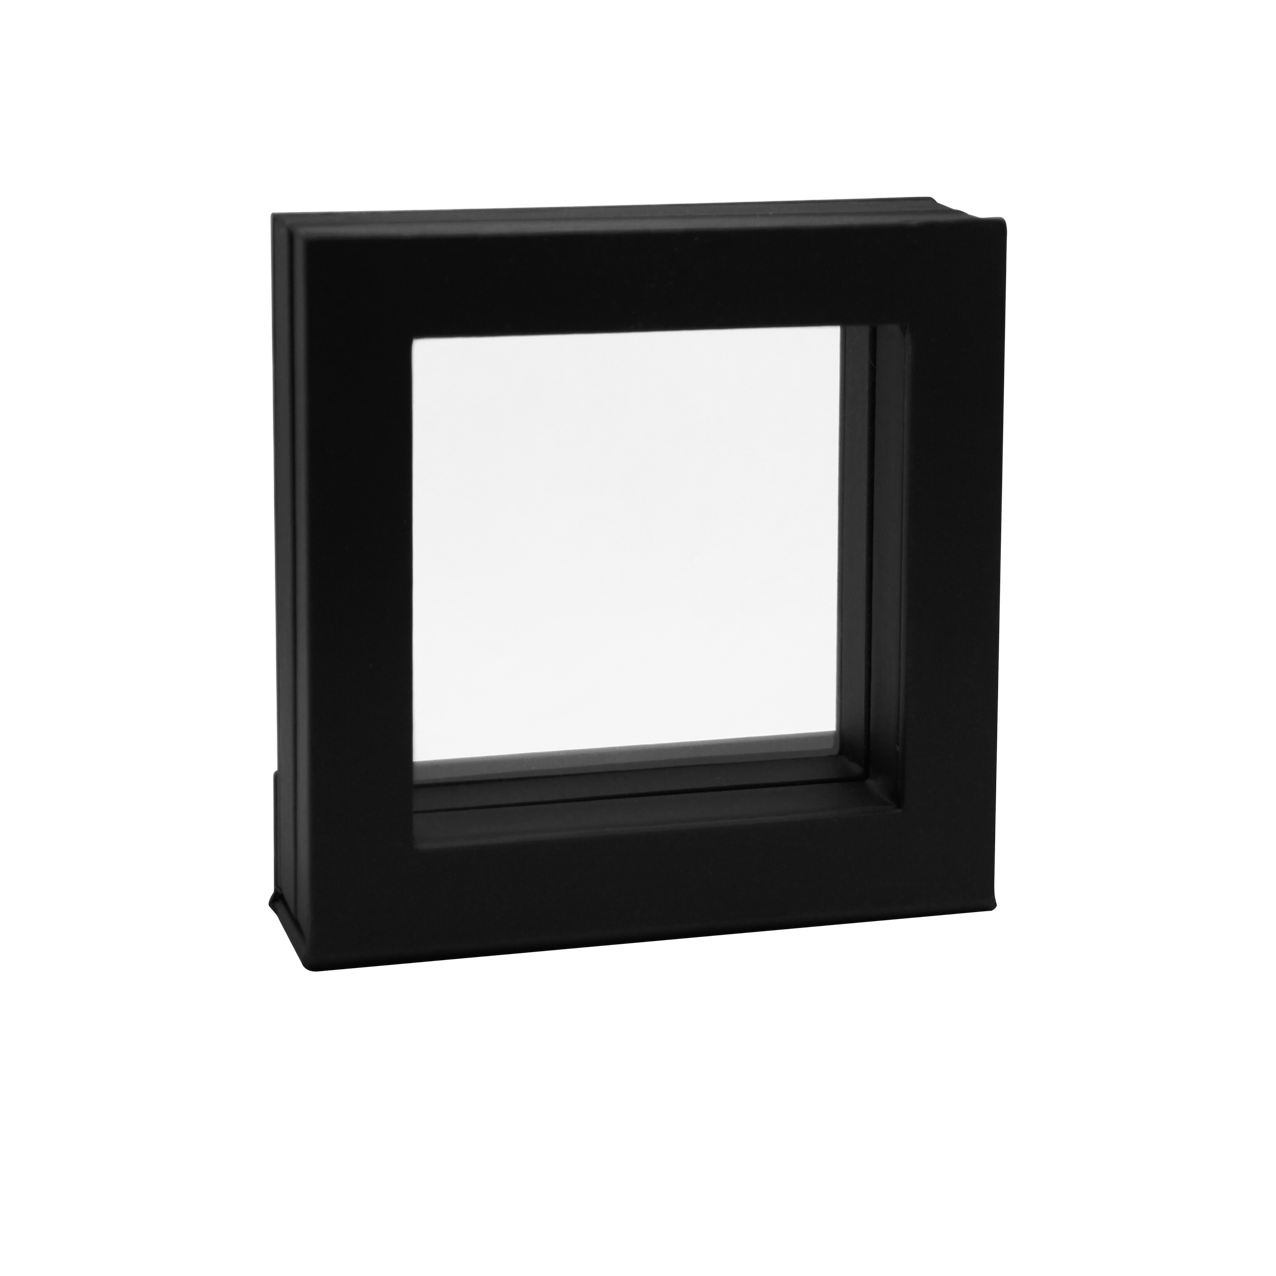 Object frame 70 x 70 mm inner dimension black